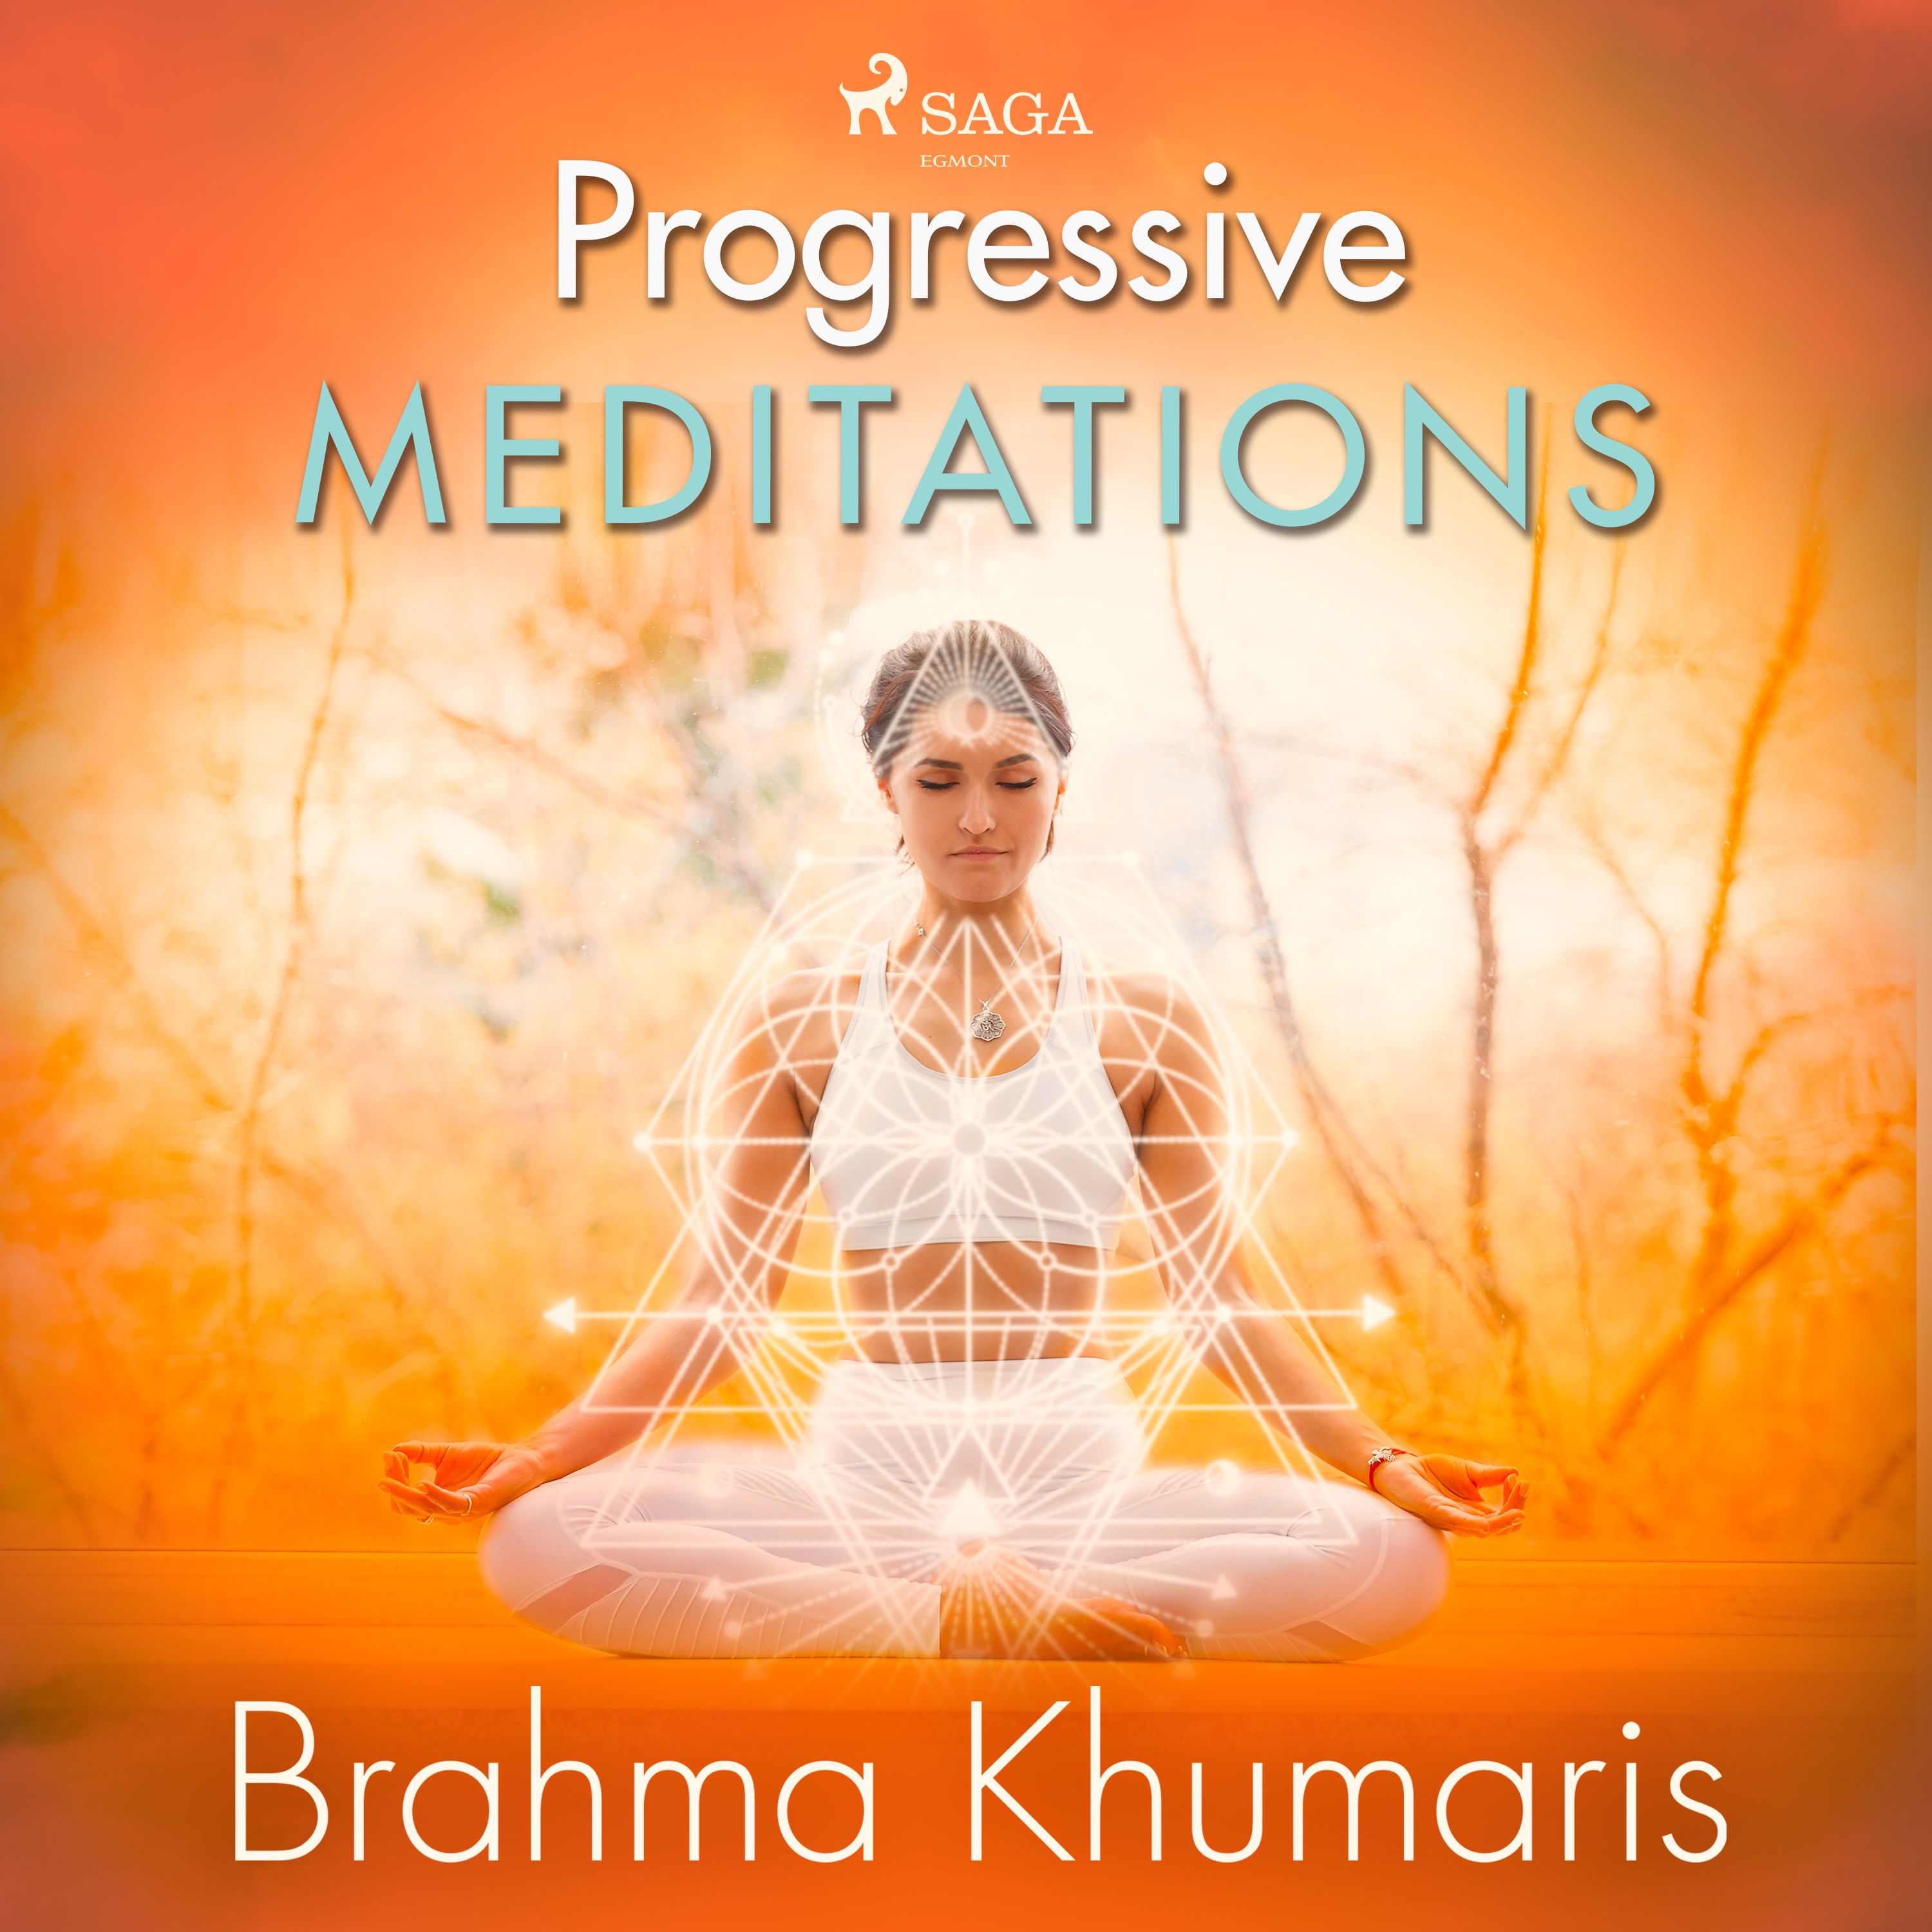 Progressive Meditations, ljudbok av Brahma Khumaris